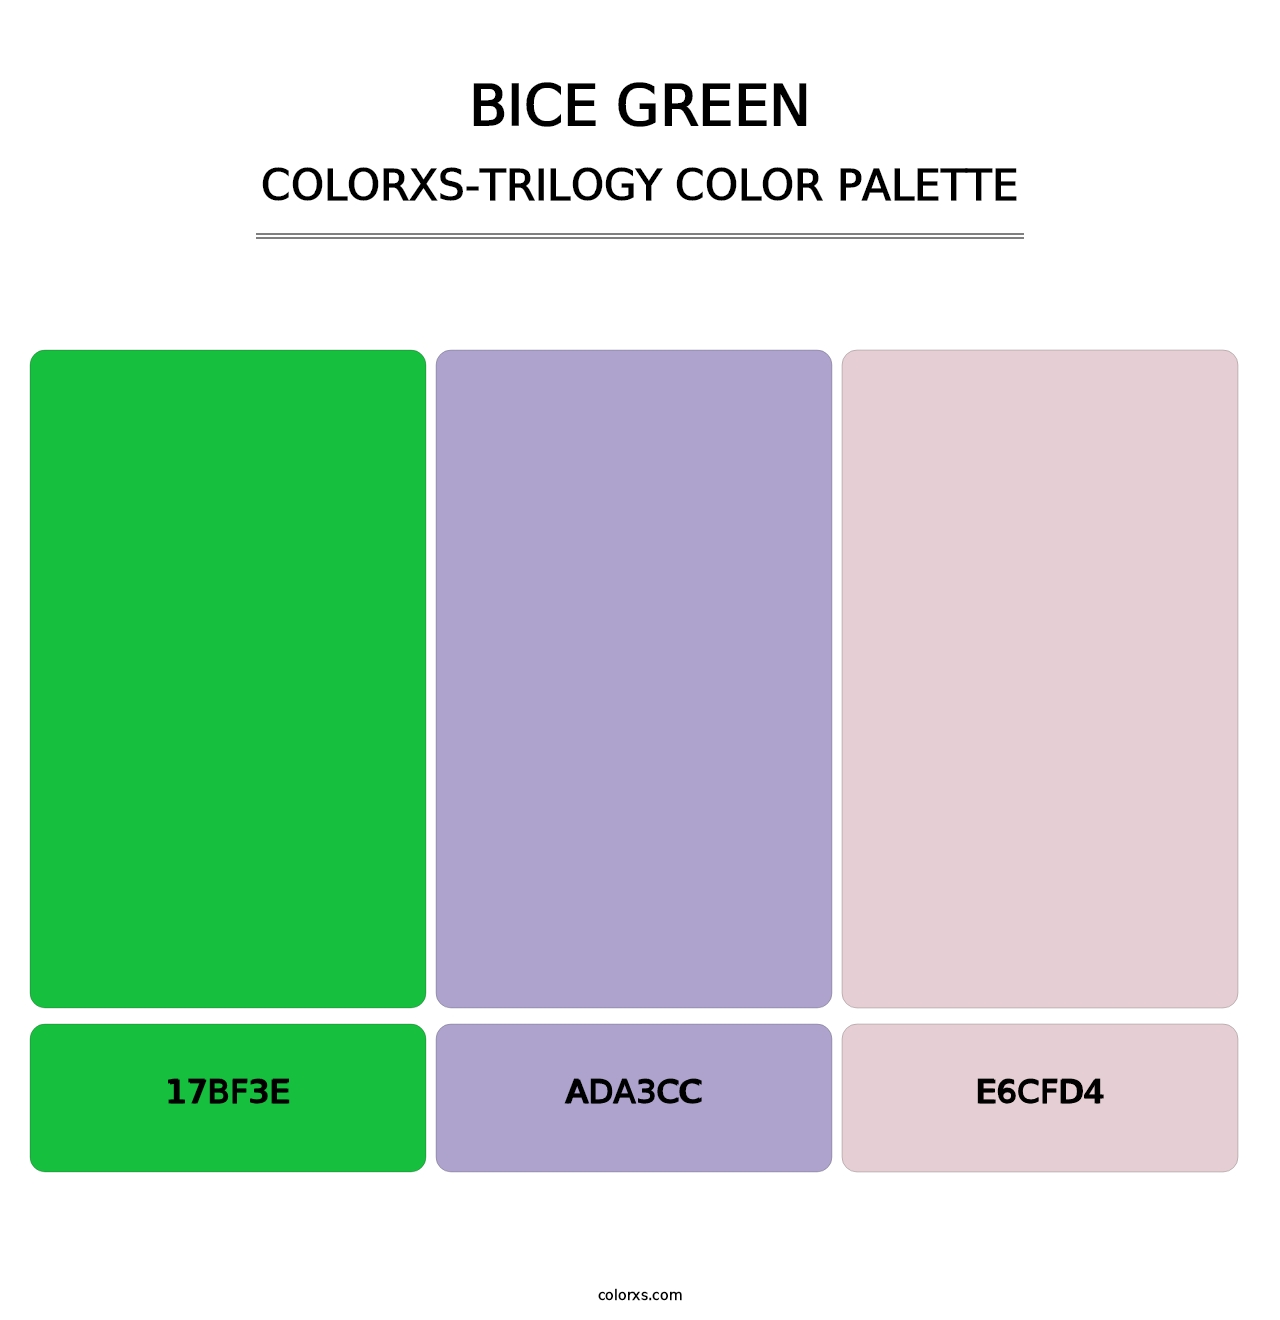 Bice Green - Colorxs Trilogy Palette